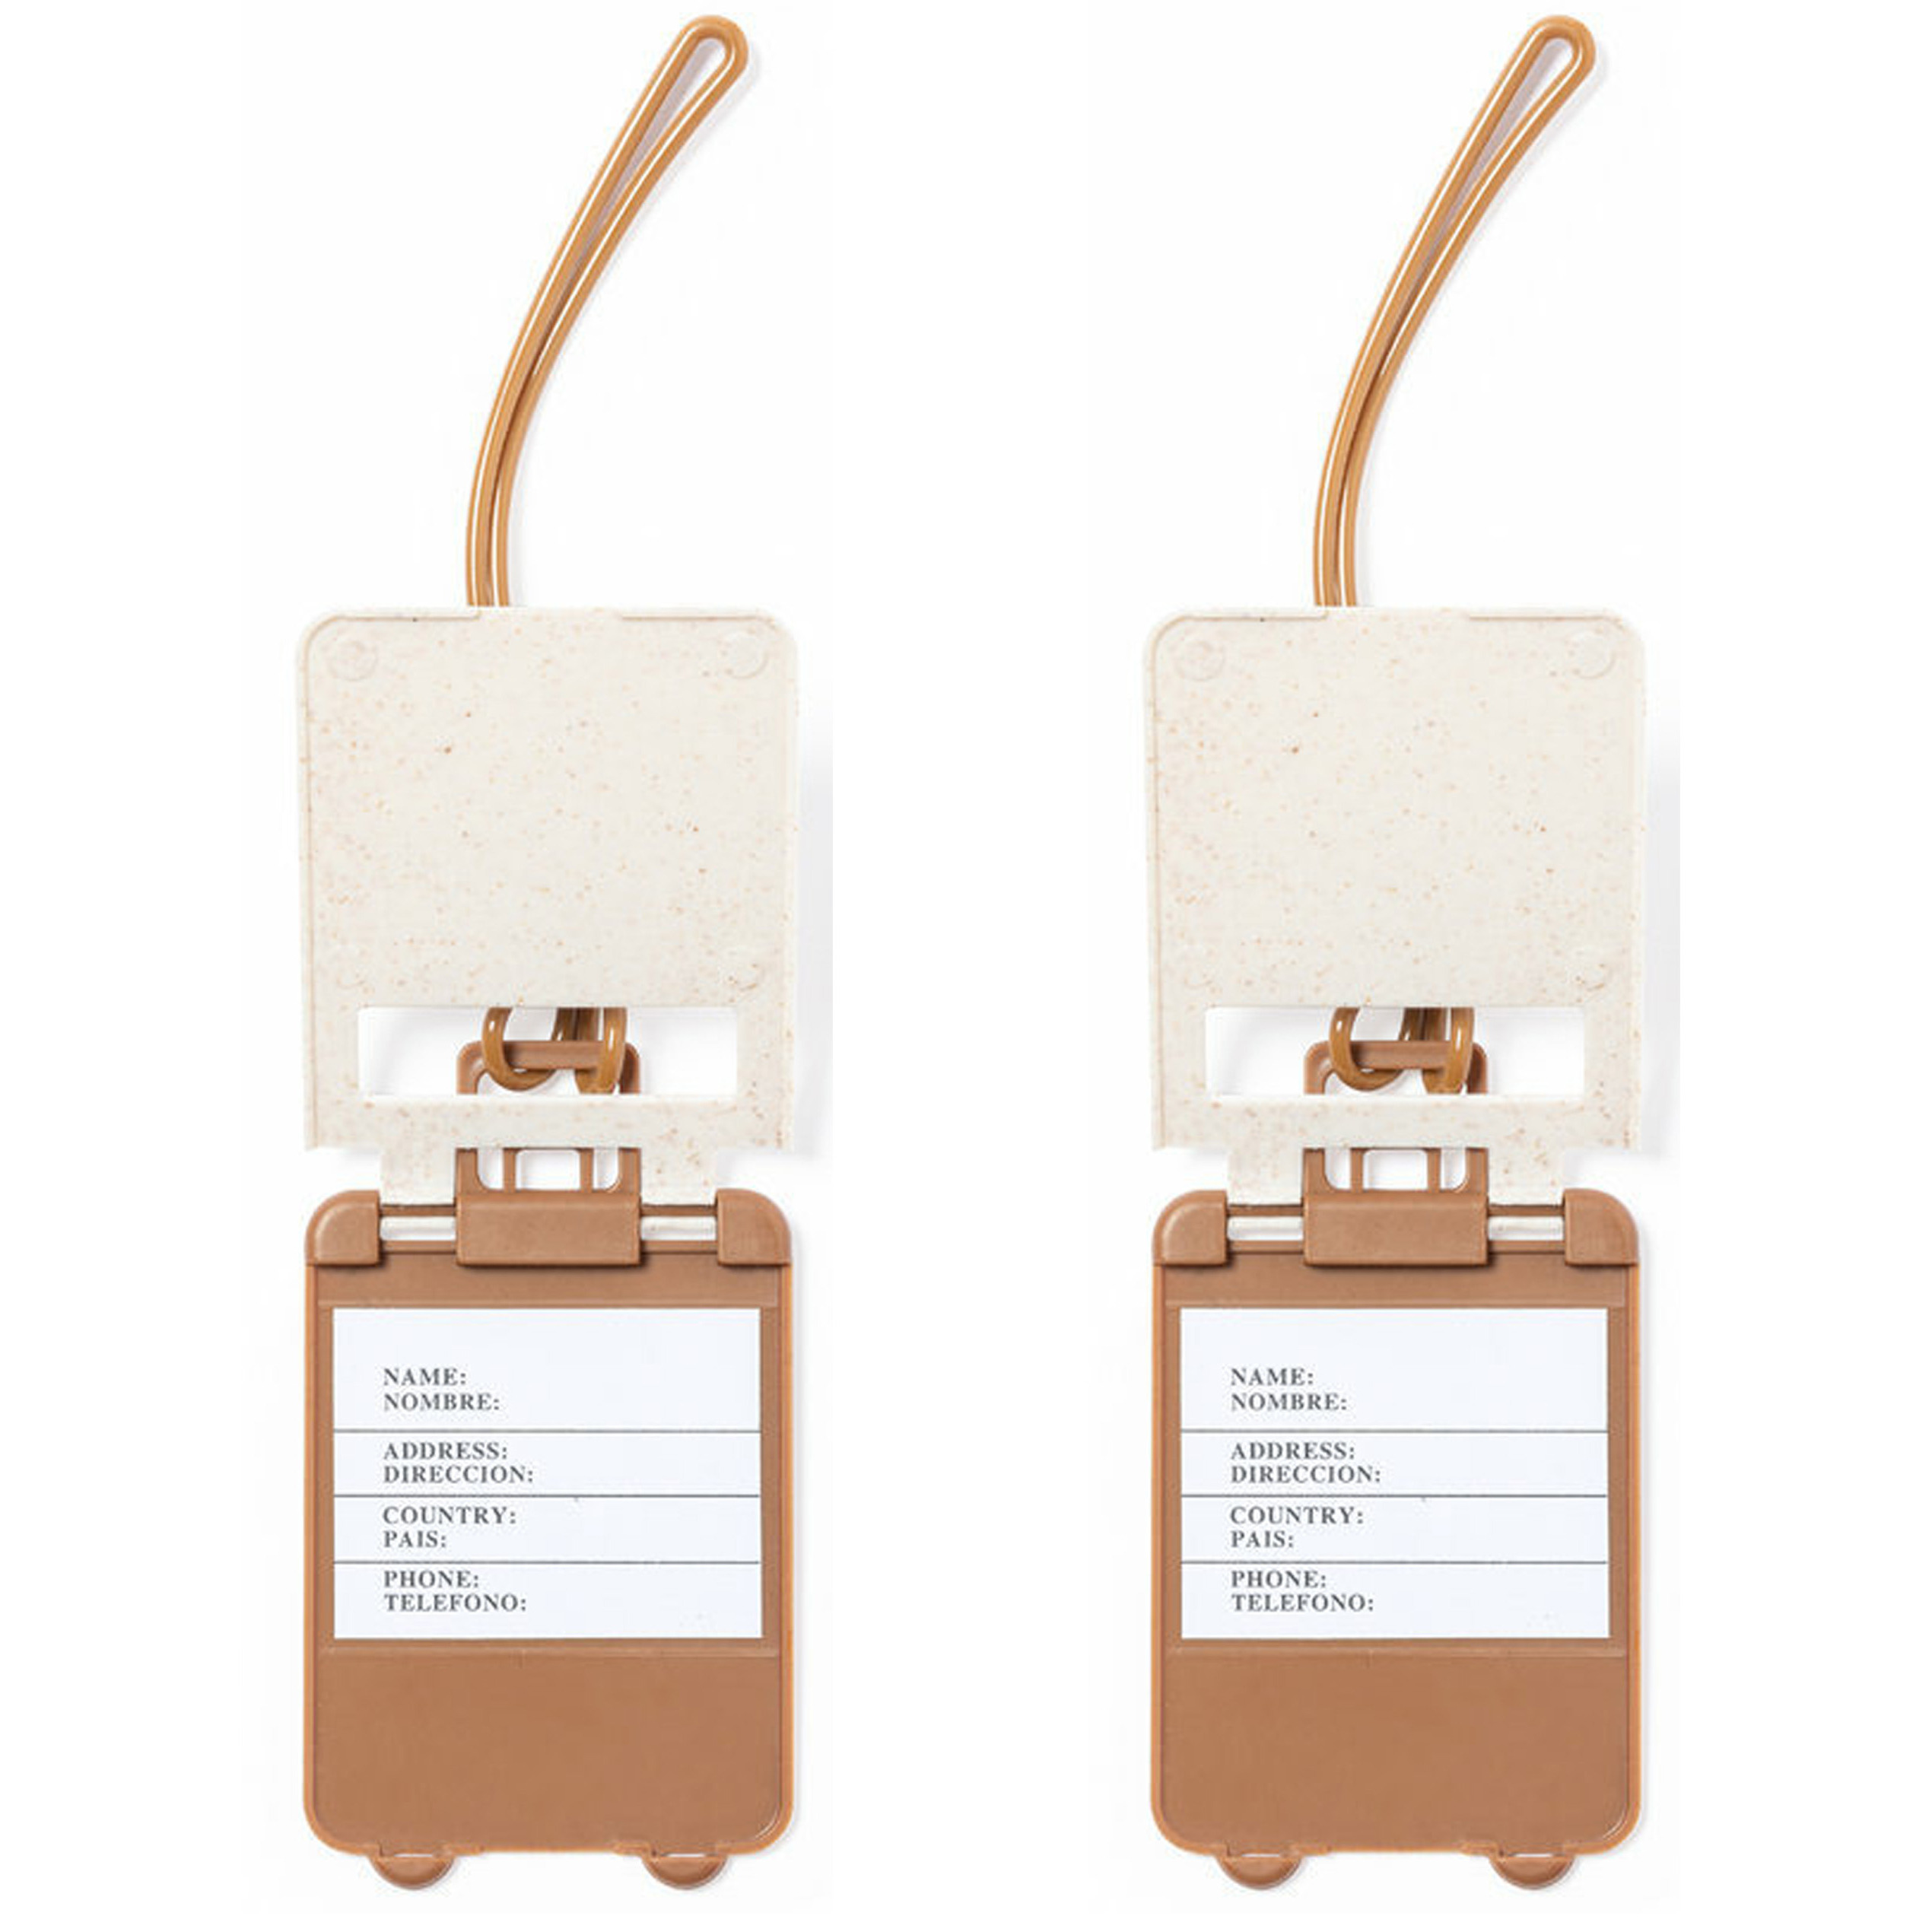 Kofferlabel van organisch eco tarwestro 10x wit 10 x 5 cm reiskoffer-handbagage labels